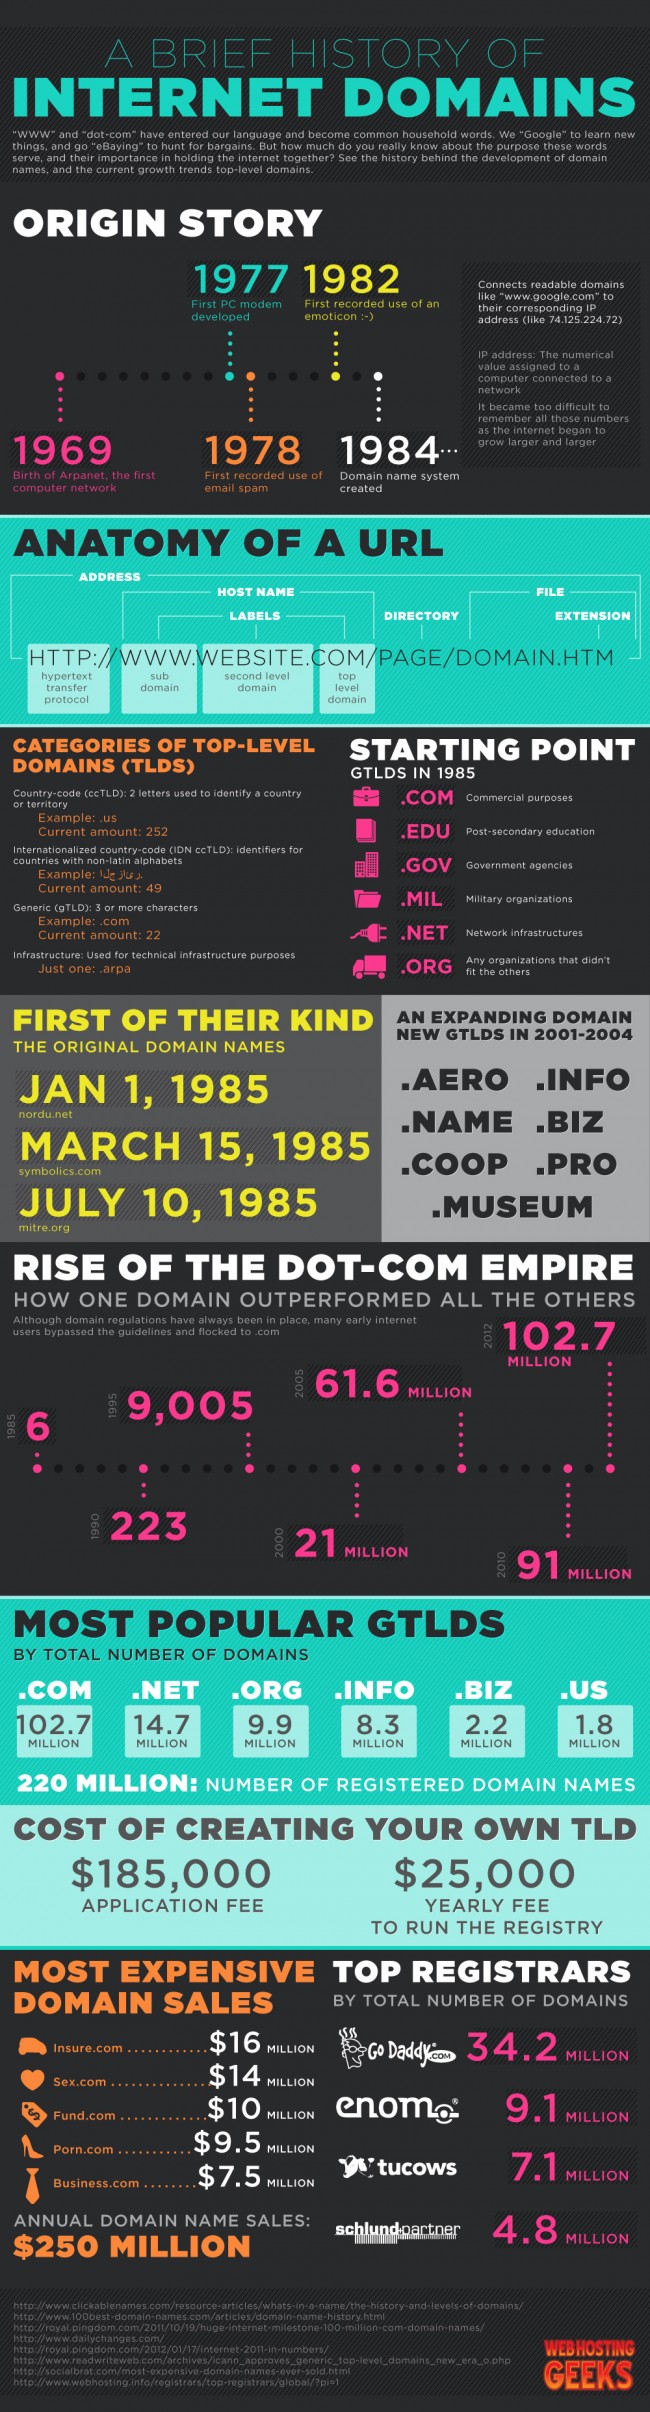 historia de los dominios en internet